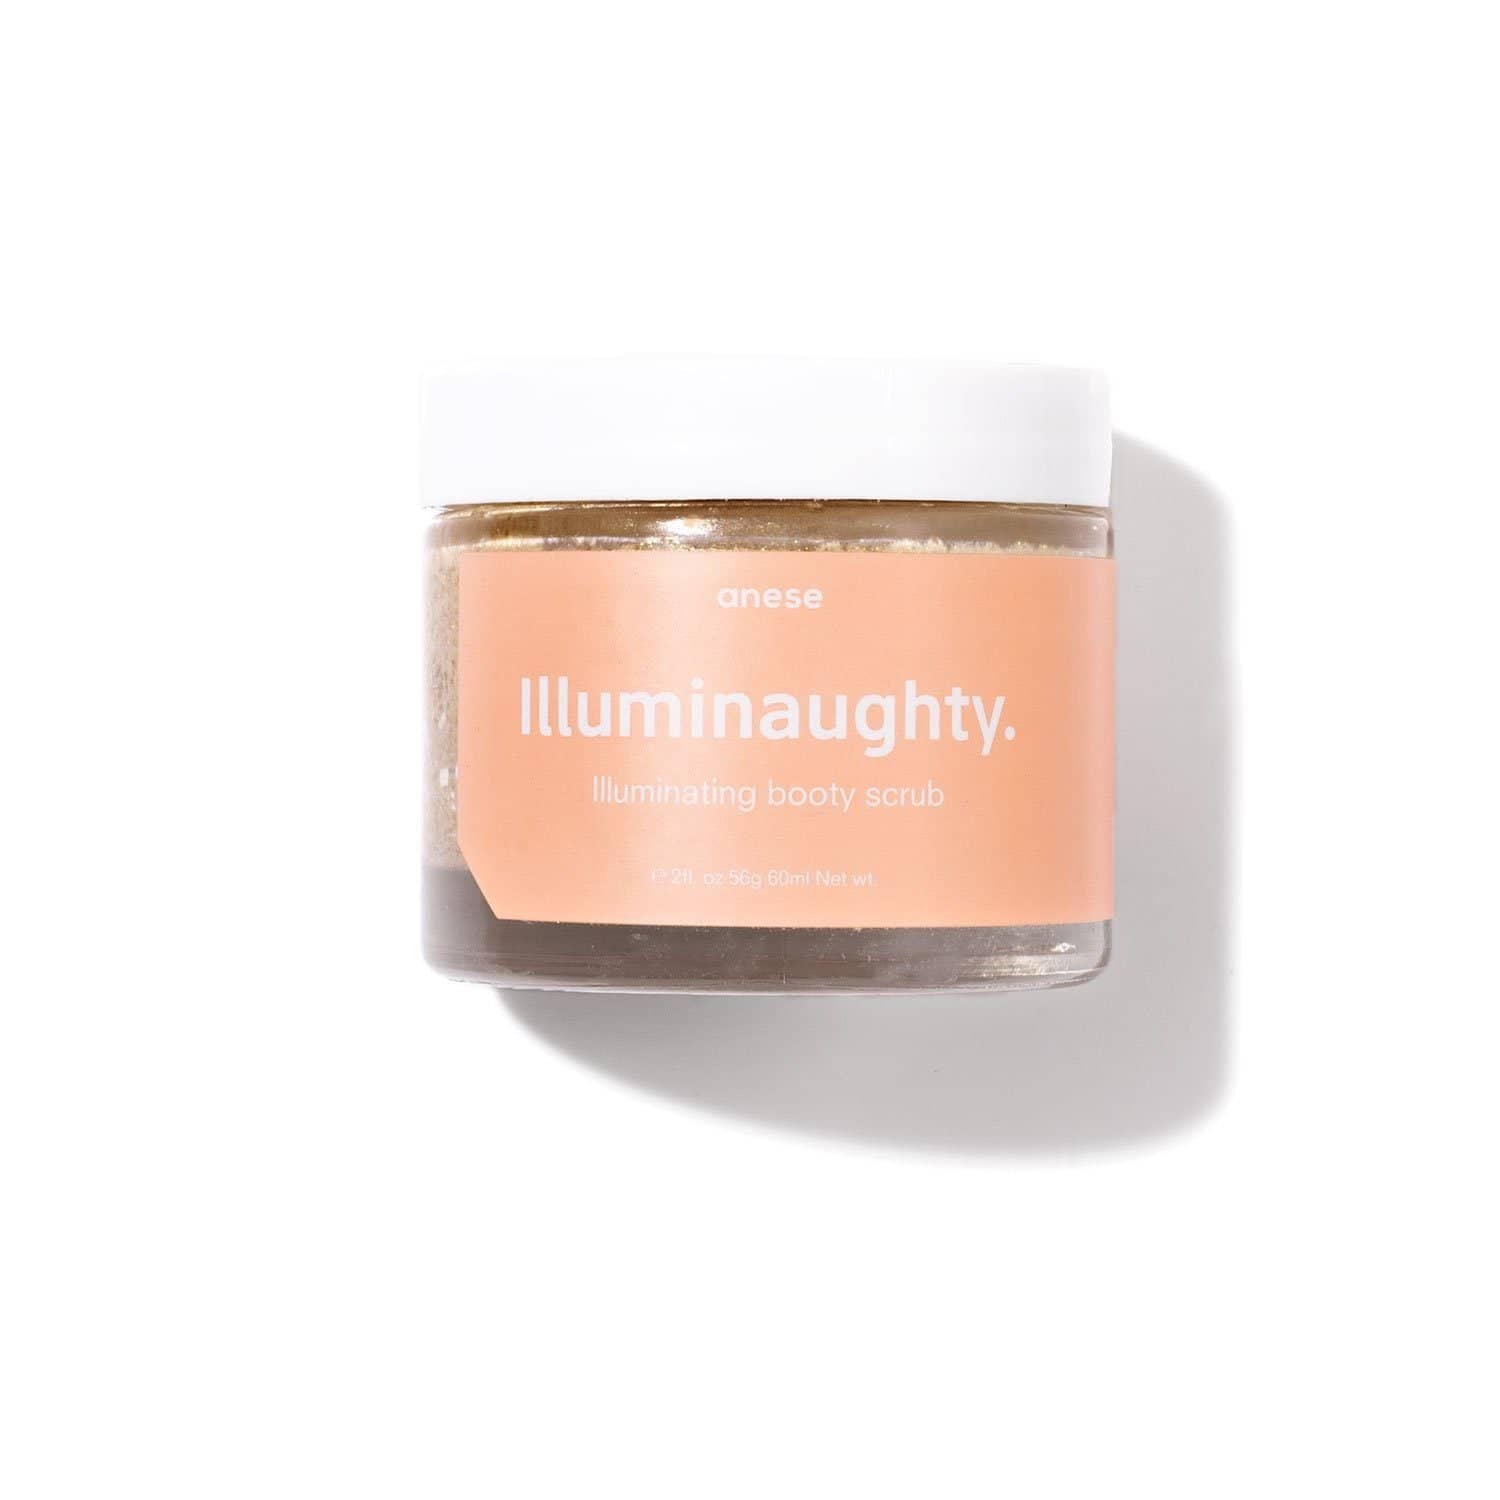 Illuminaughty. - Anese